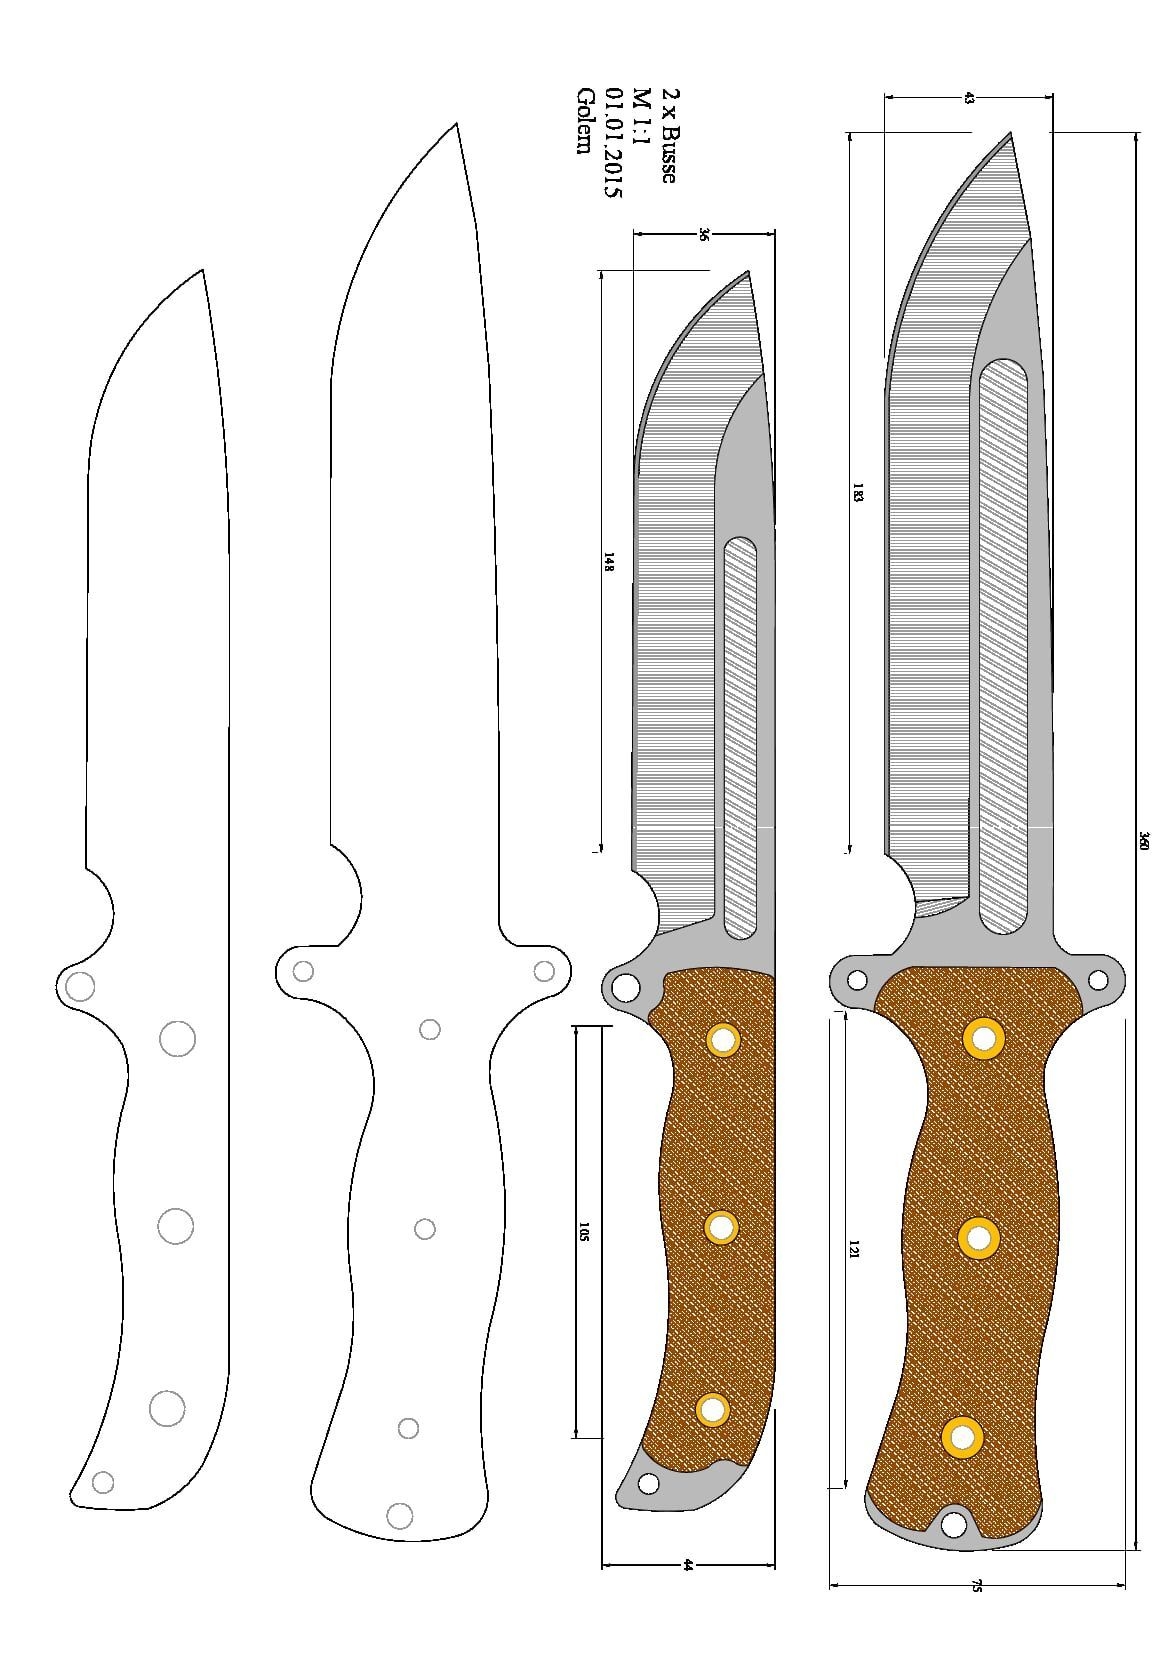 Японские кухонные ножи - виды и назначение